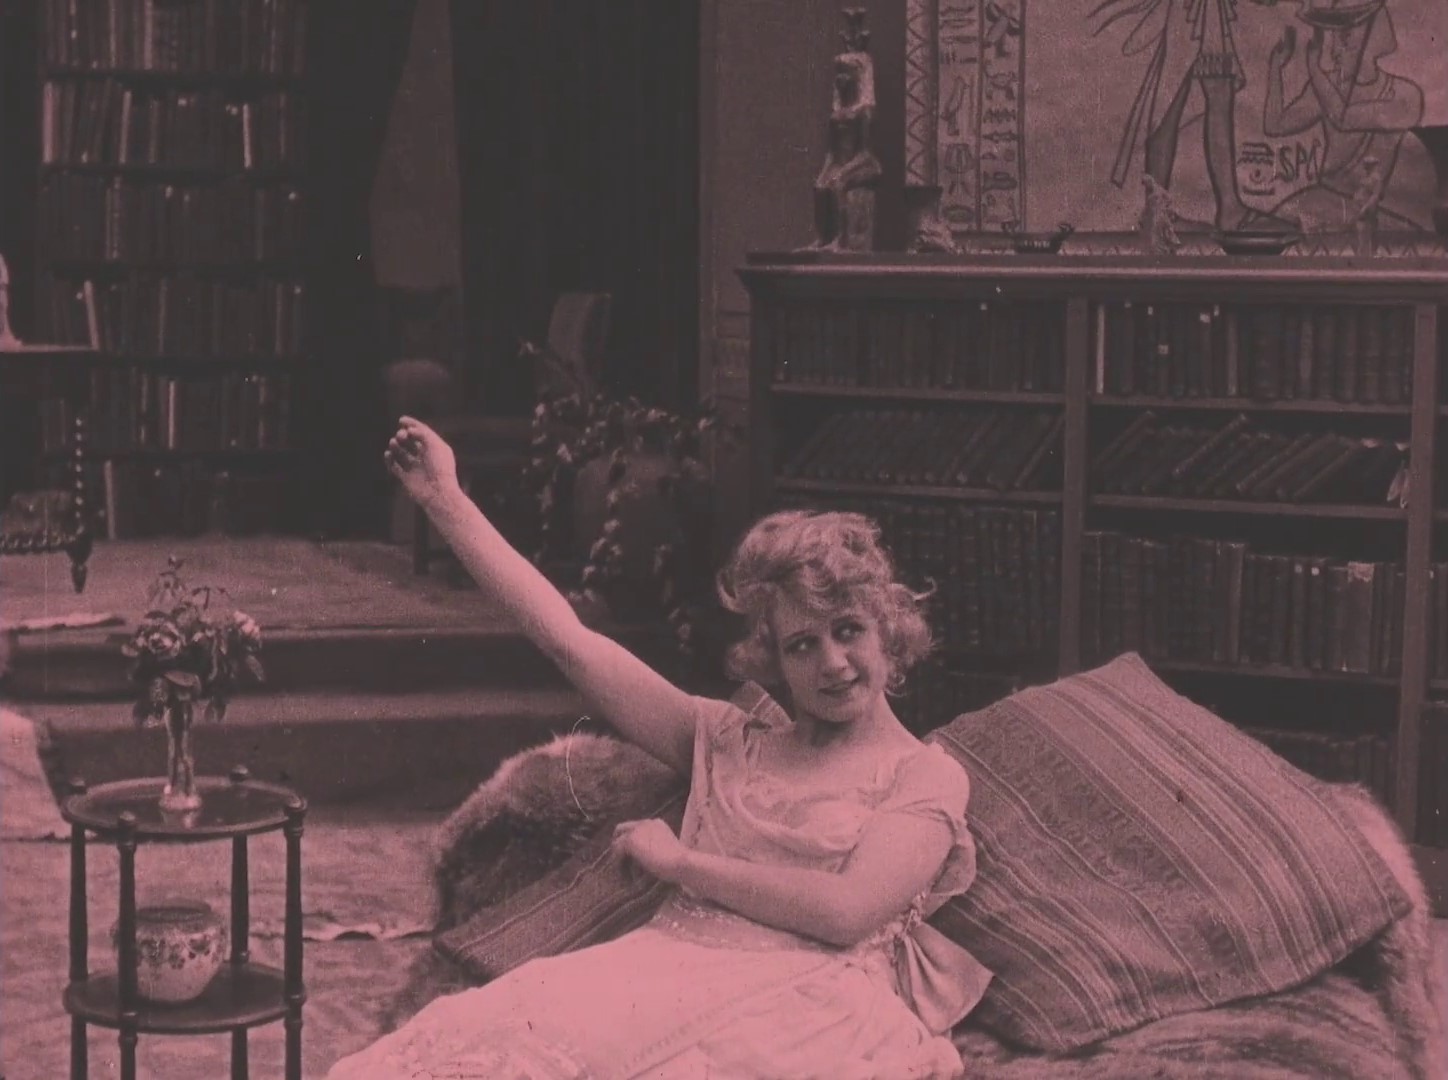 Andrée Brabant dans La cigarette (1919) de Germaine Dulac